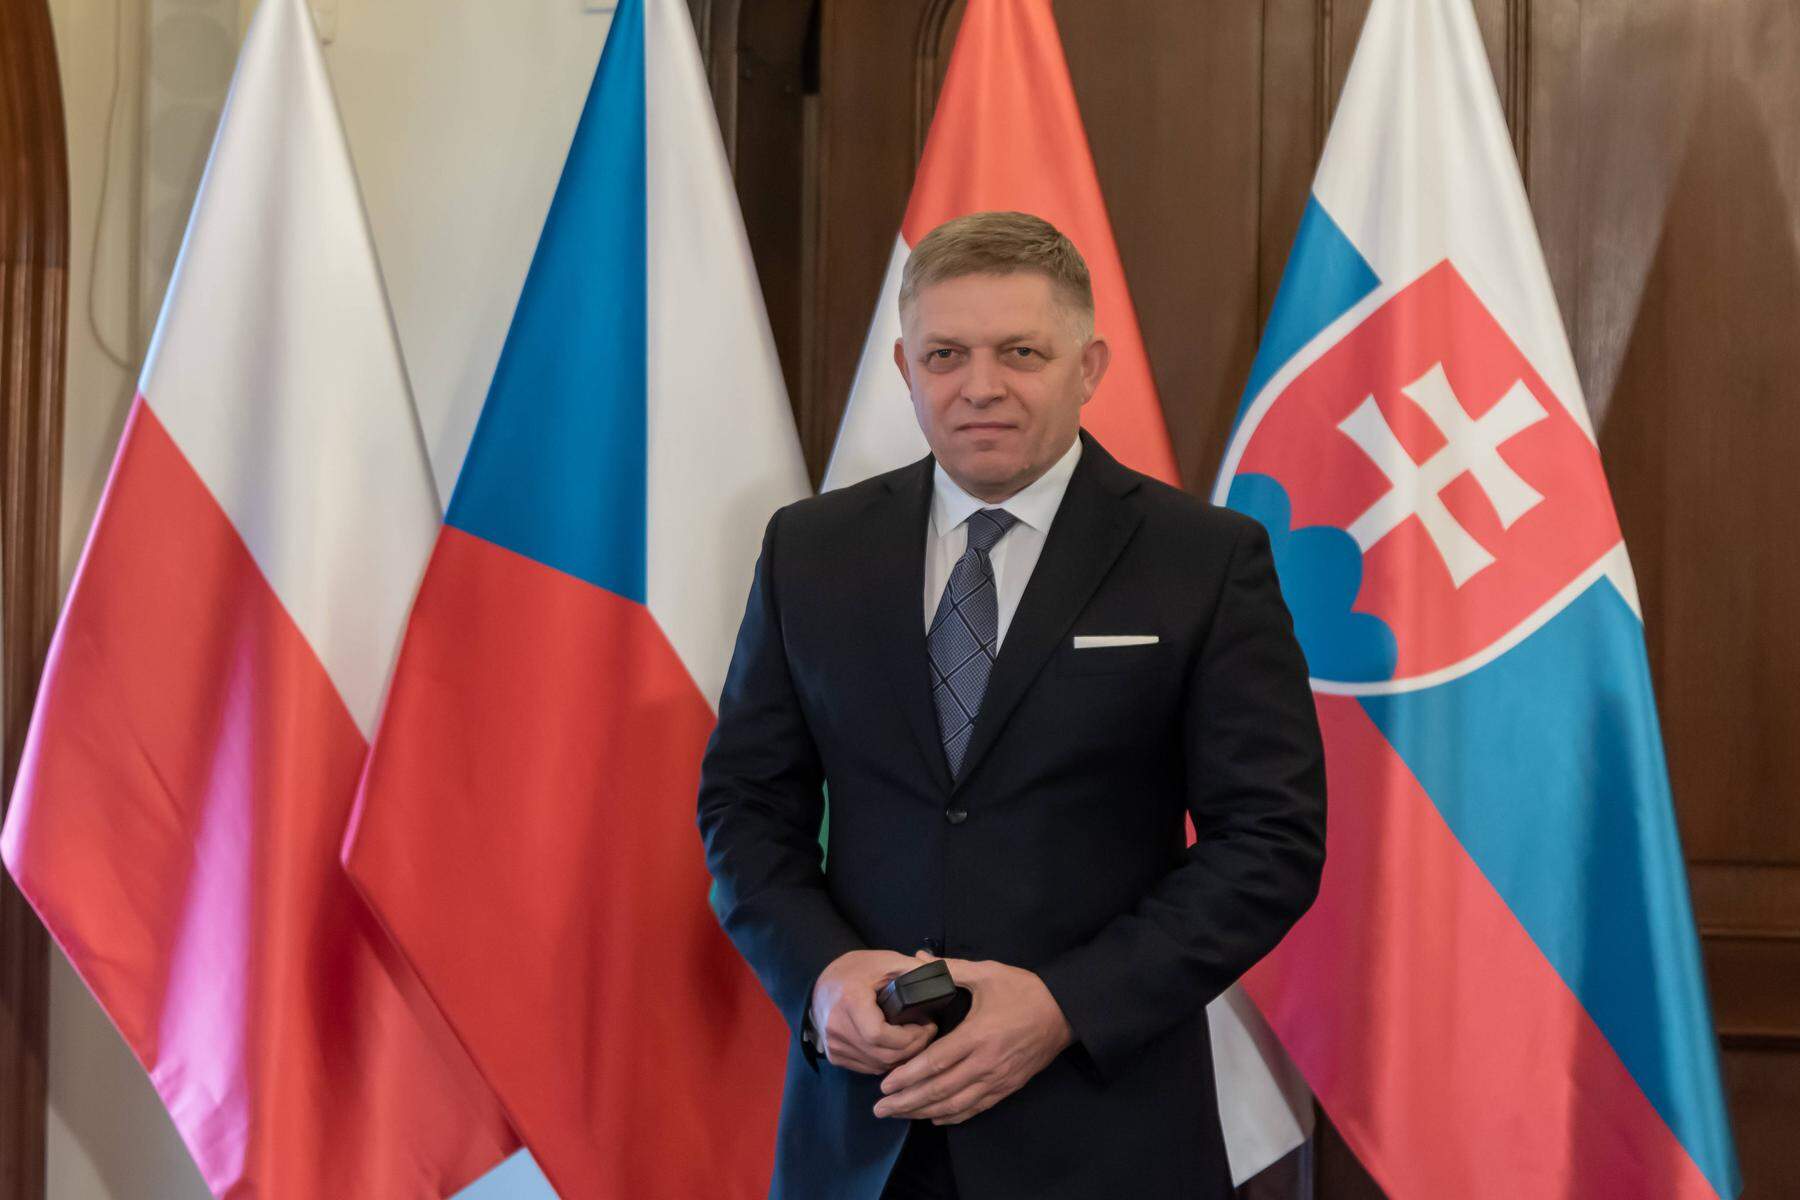 Zustand aber „weiter ernst“: Slowakischer Premier Fico ist nach Schussattacke außer Lebensgefahr